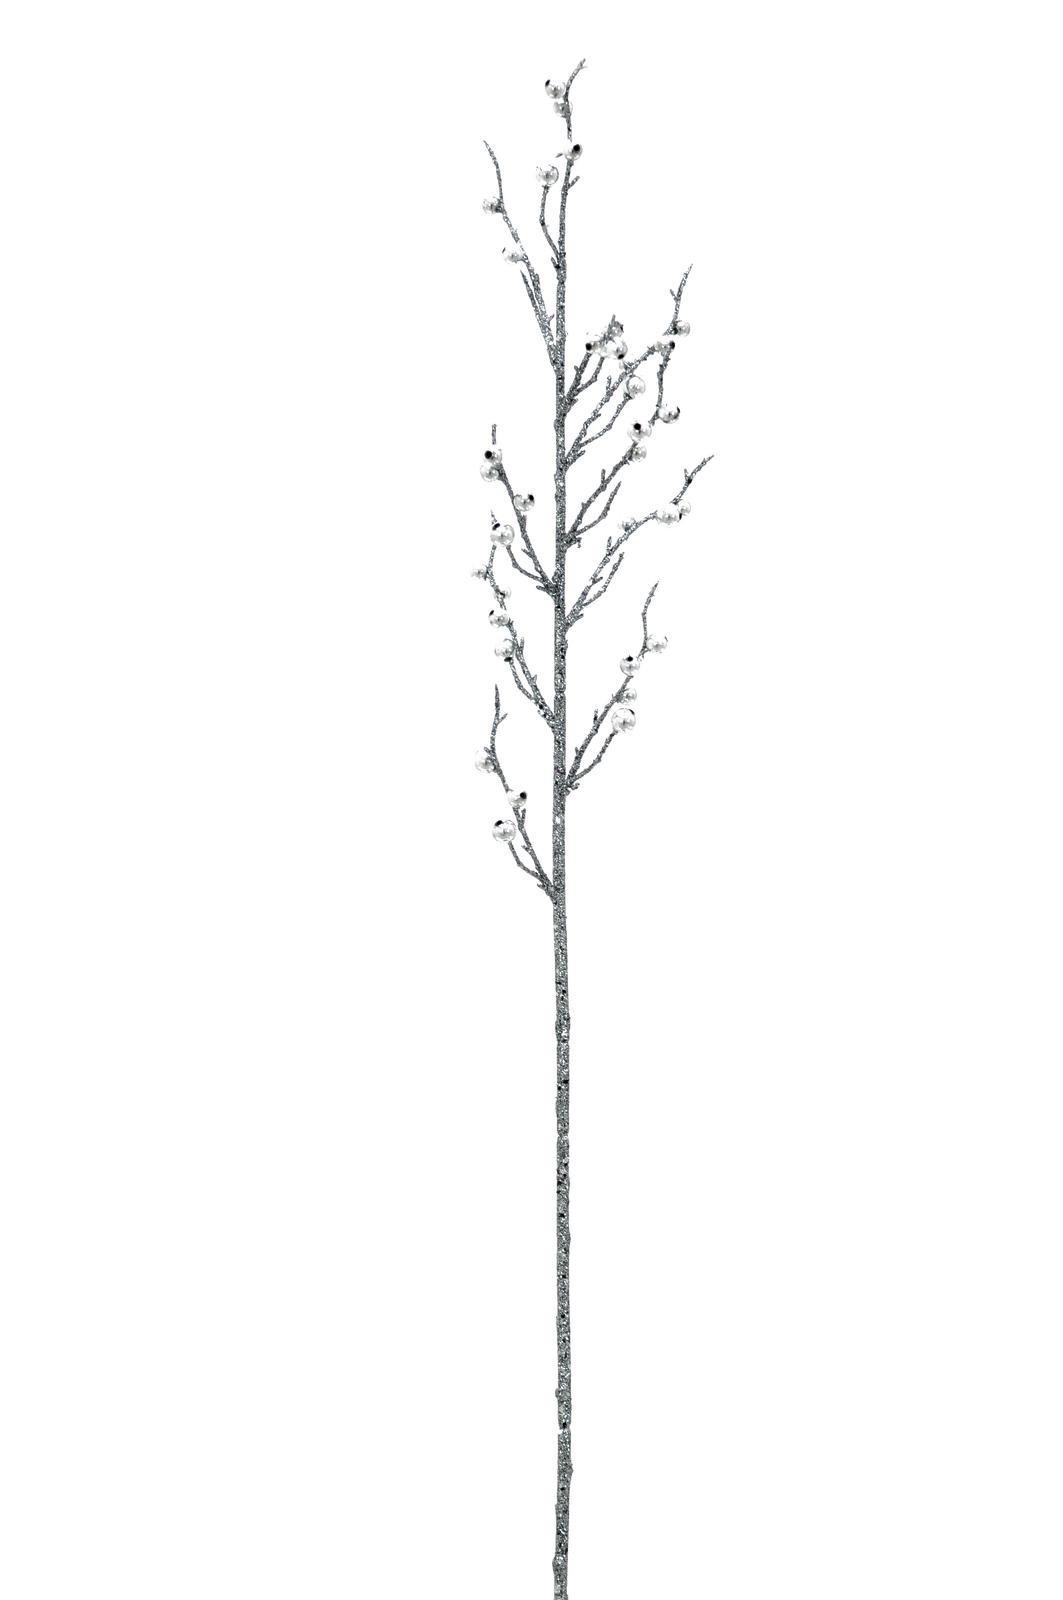 Dekorační větvička s korálky - stříbrná, 85cm / 3ks